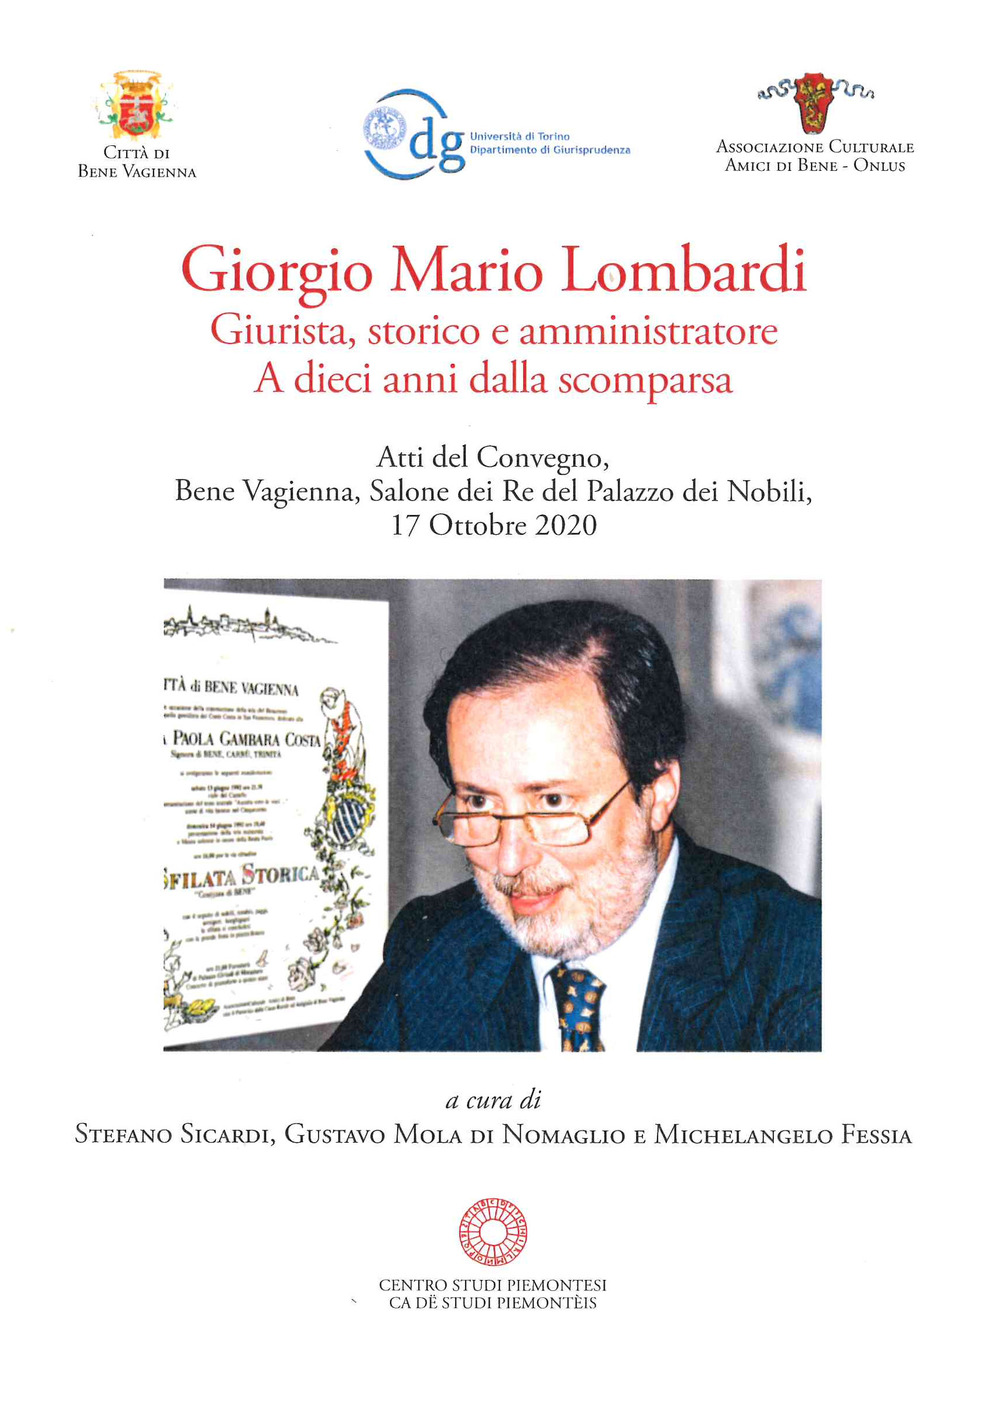 Giorgio Mario Lombardi. Giurista, storico e amministratore. A dieci anni dalla scomparsa. Atti del Convegno (17 ottobre, 2020)